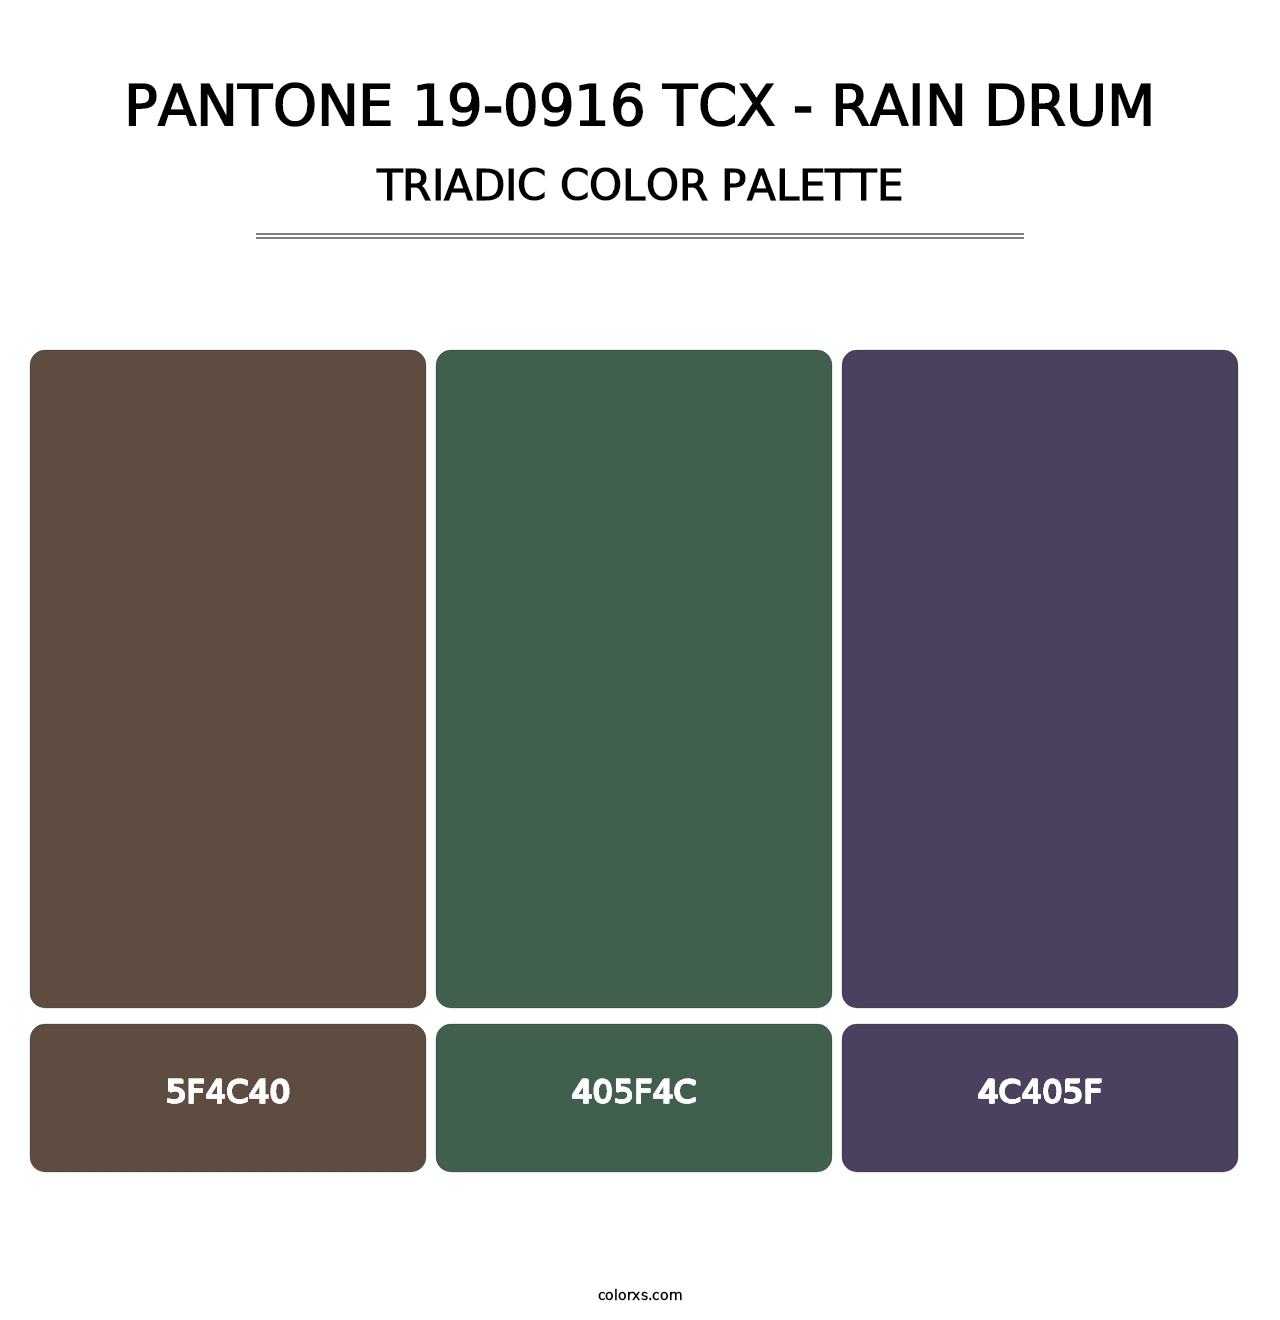 PANTONE 19-0916 TCX - Rain Drum - Triadic Color Palette